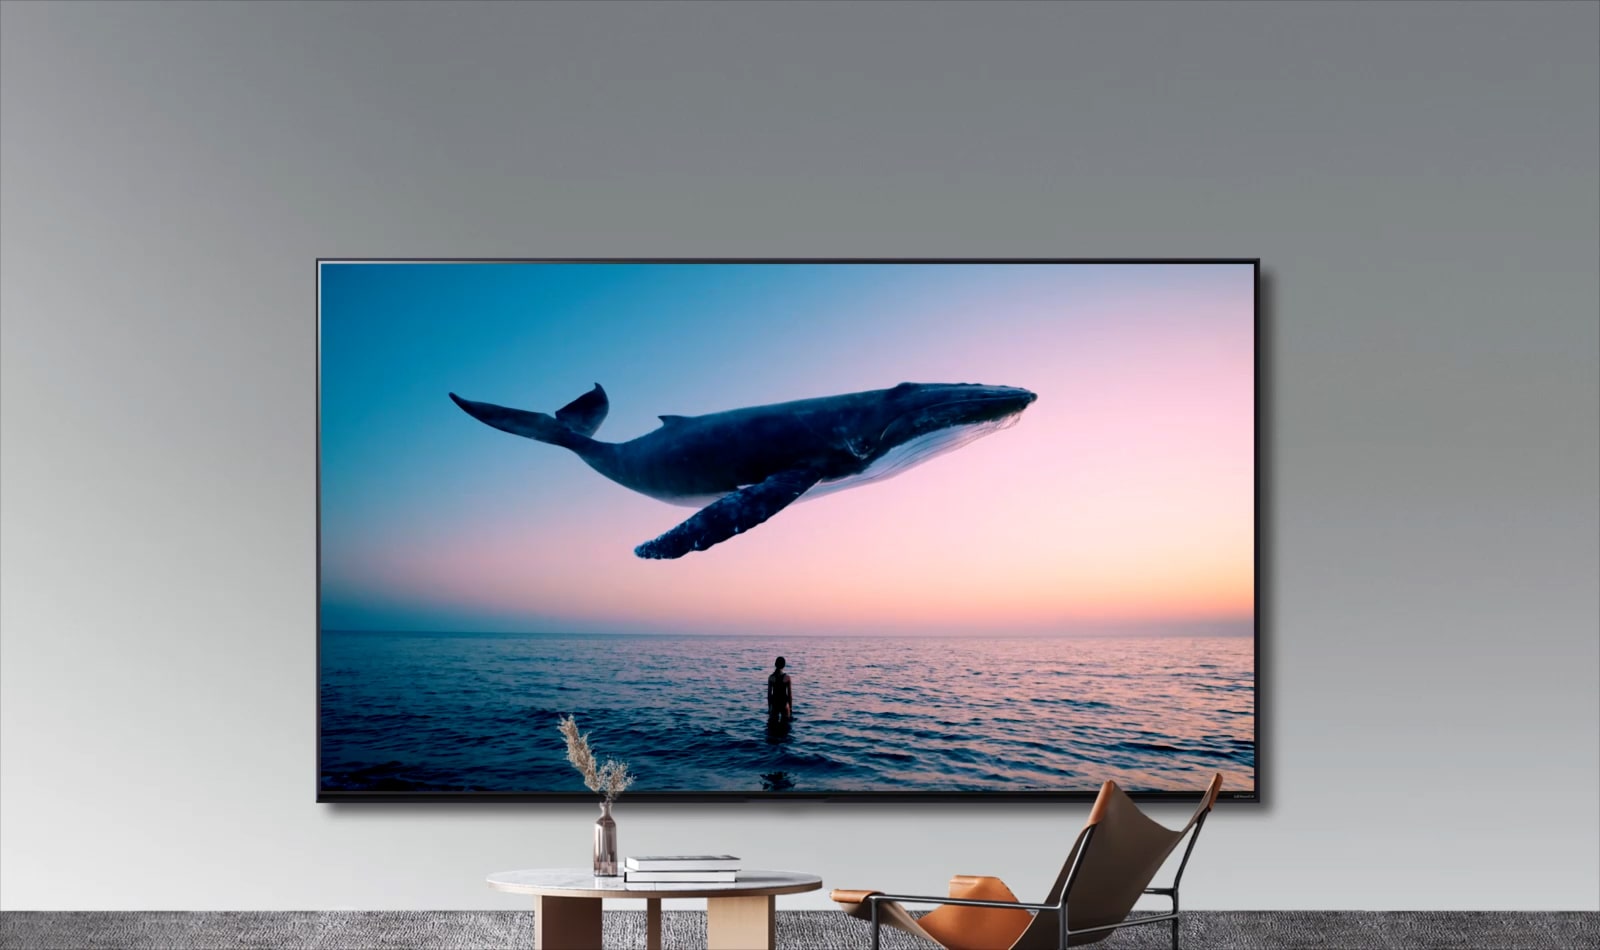 Televisor LG 55 NanoCell UHD 4K Smart Tv WebOS 23 55NANO77SRA - Tiendas  Jumbo